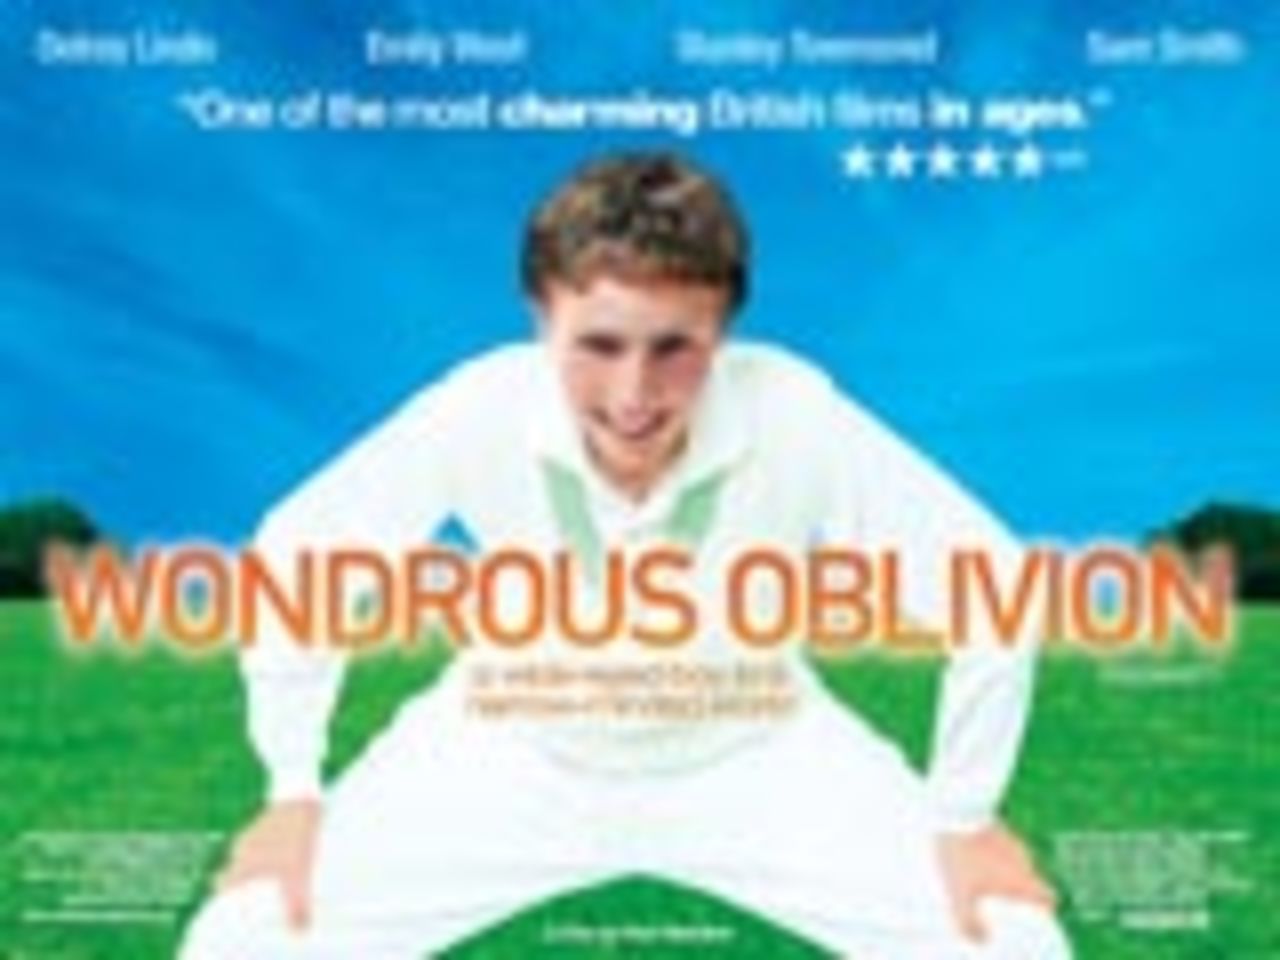 Wondrous Oblivion DVD, September 17 2004